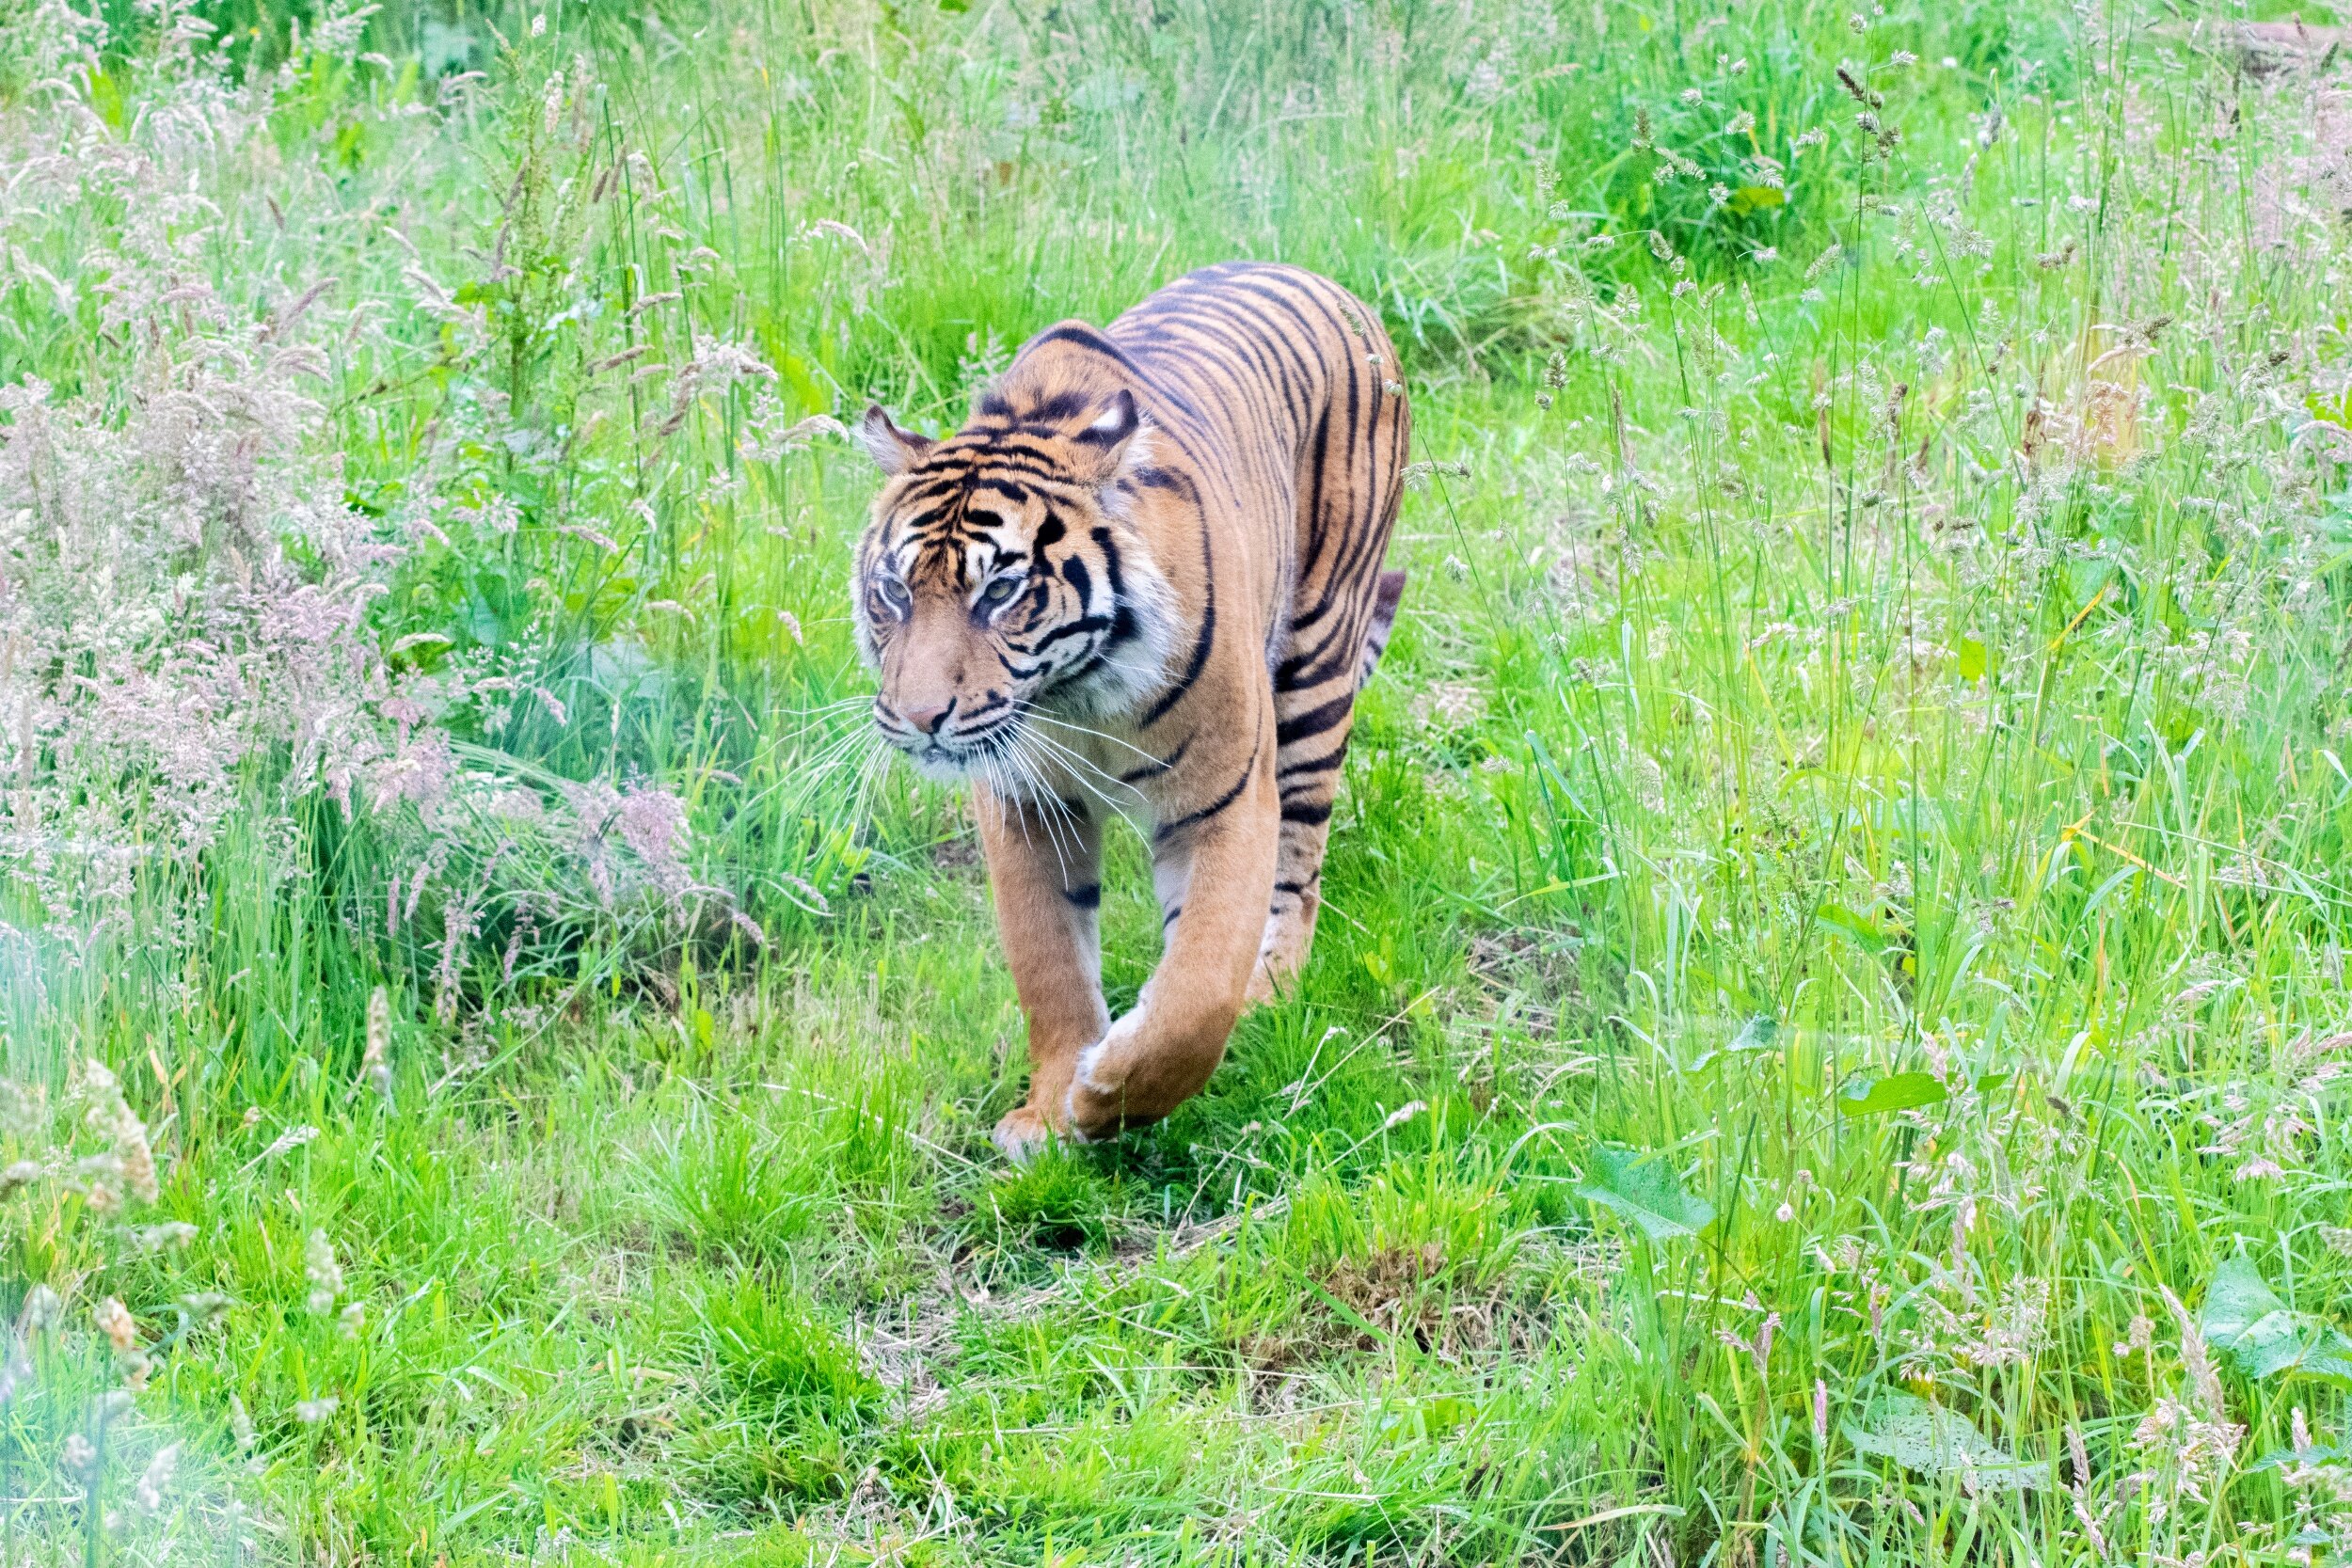 processed_Safari Zoo tiger.jpg